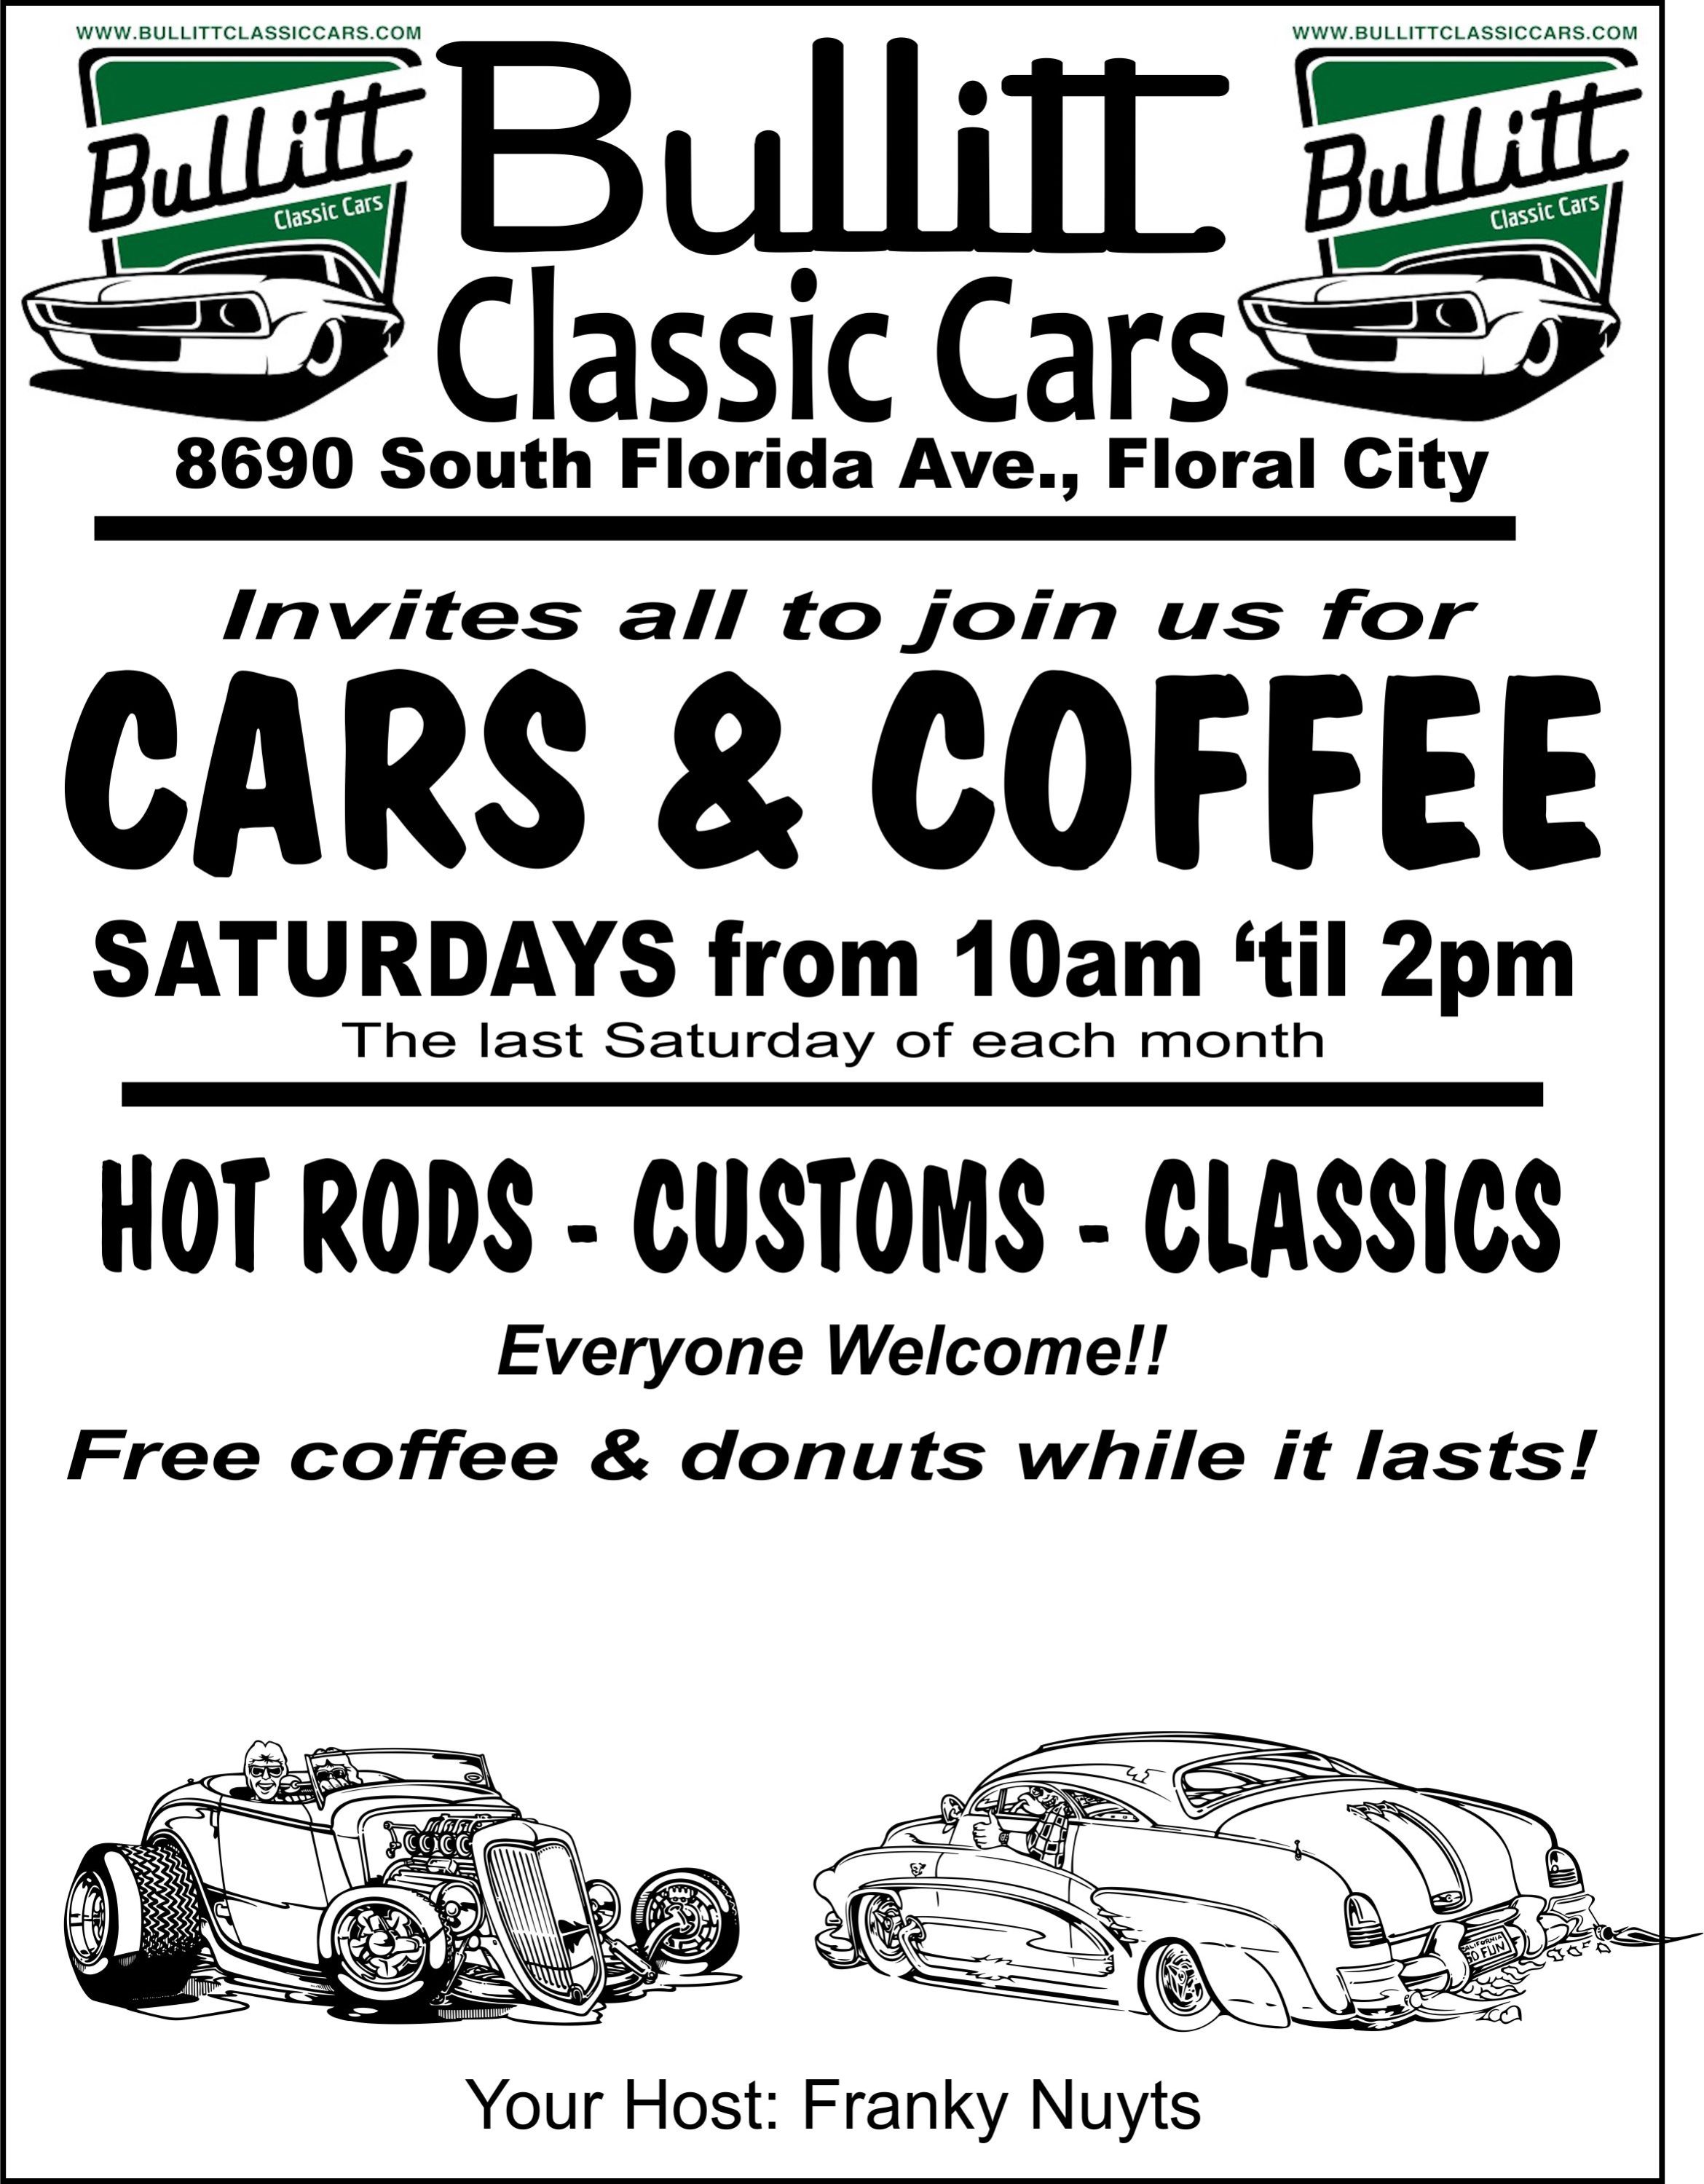 cars-coffee-at-bullitt-classic-cars-bullitt-classic-cars